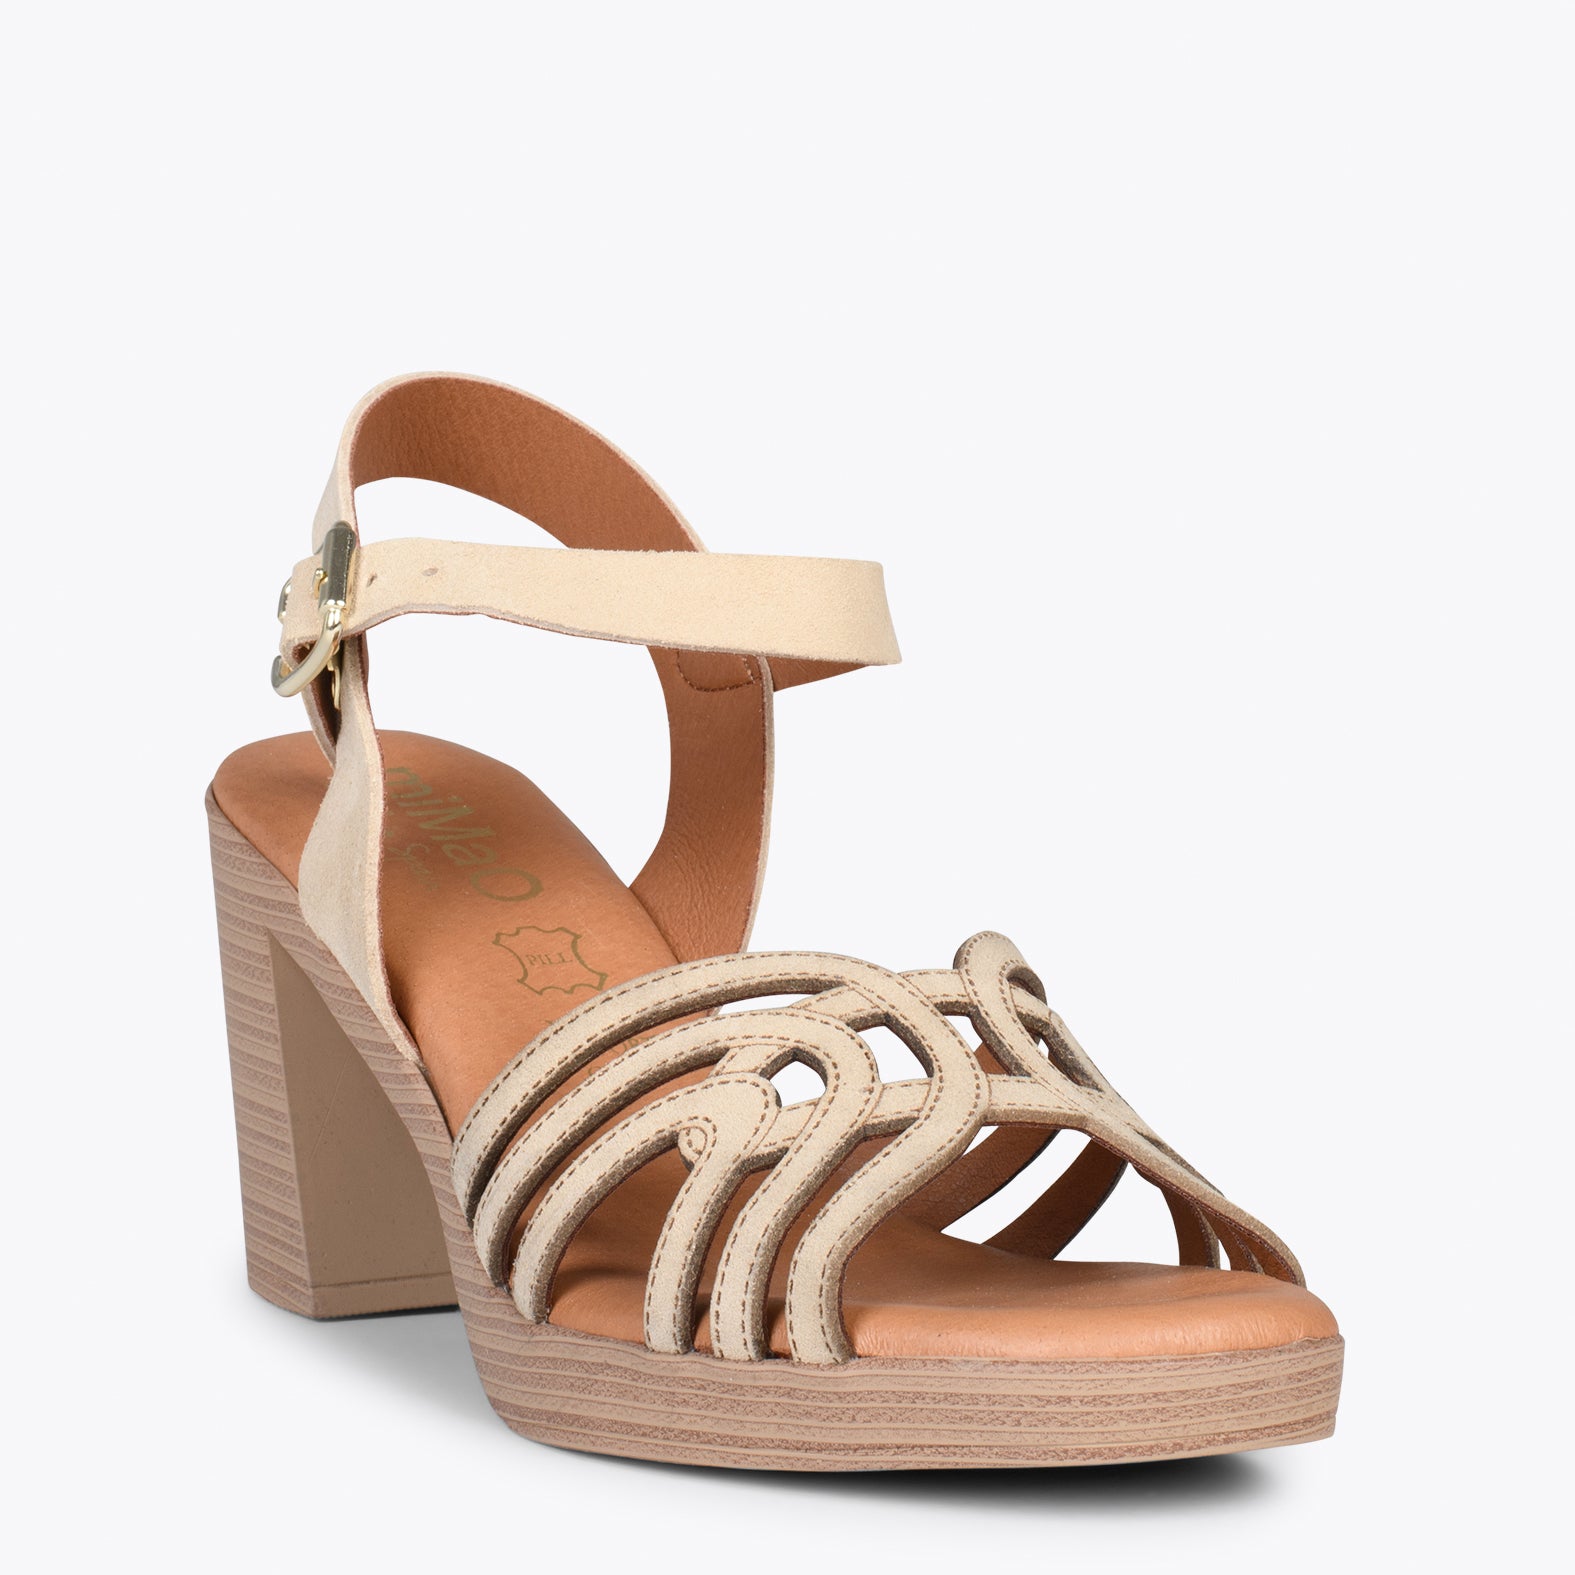 CIBELES – BEIGE wooden block heel sandal